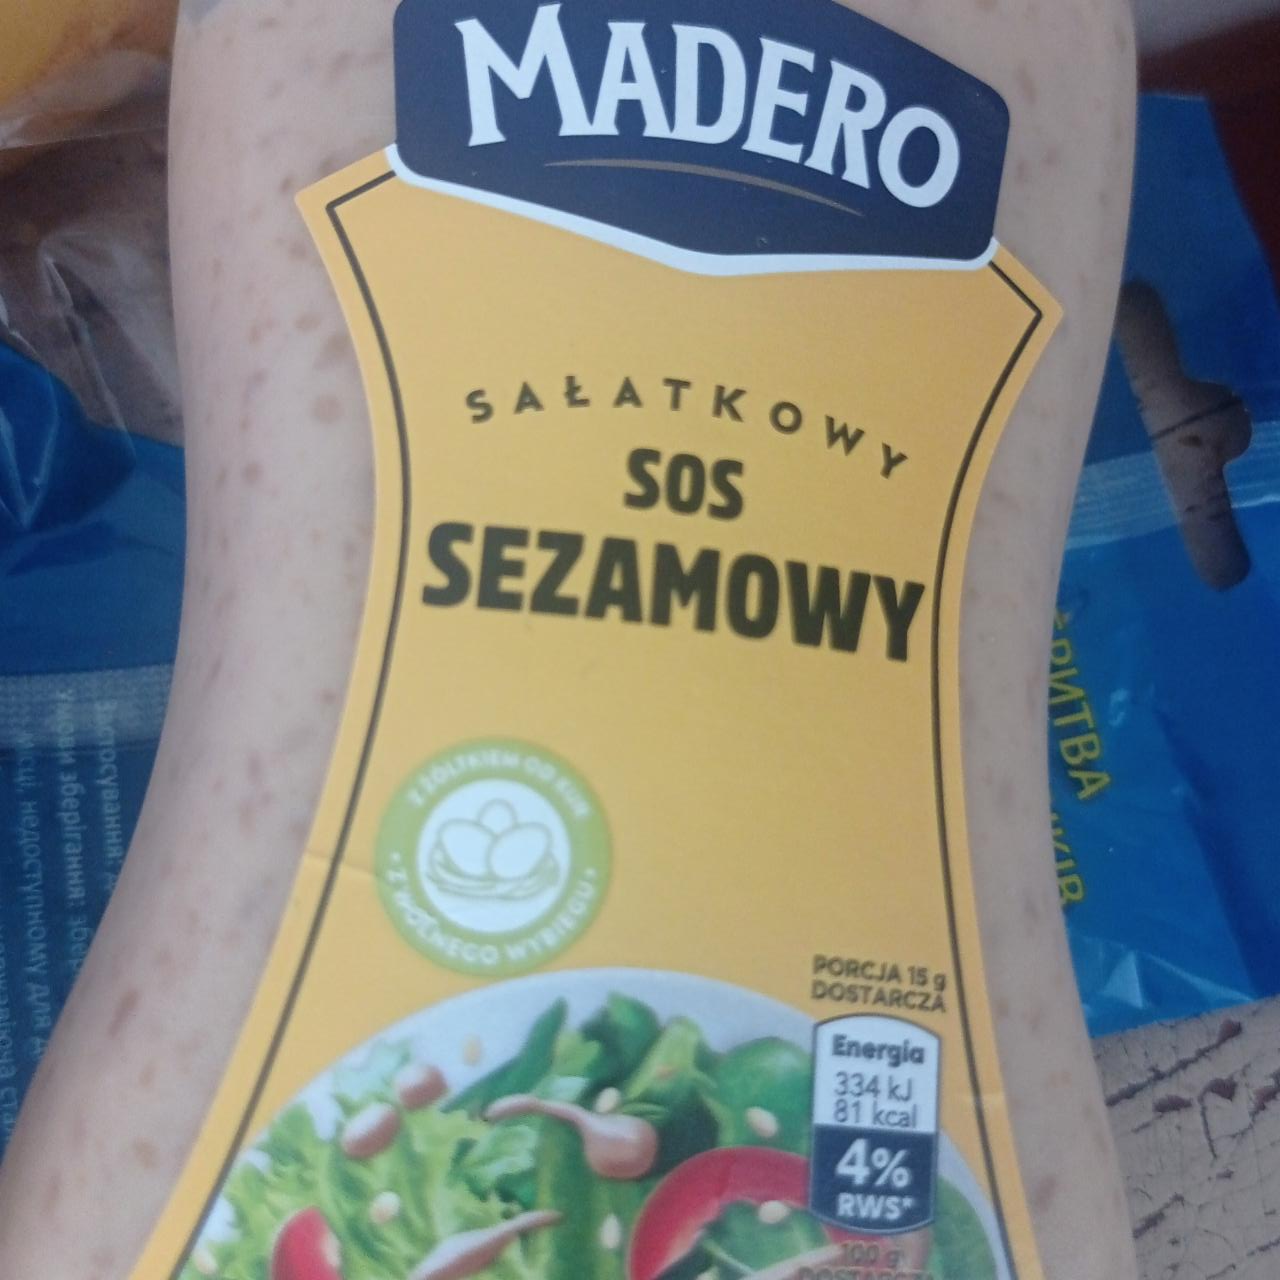 Zdjęcia - Sos sezamowy sałatkowy Madero